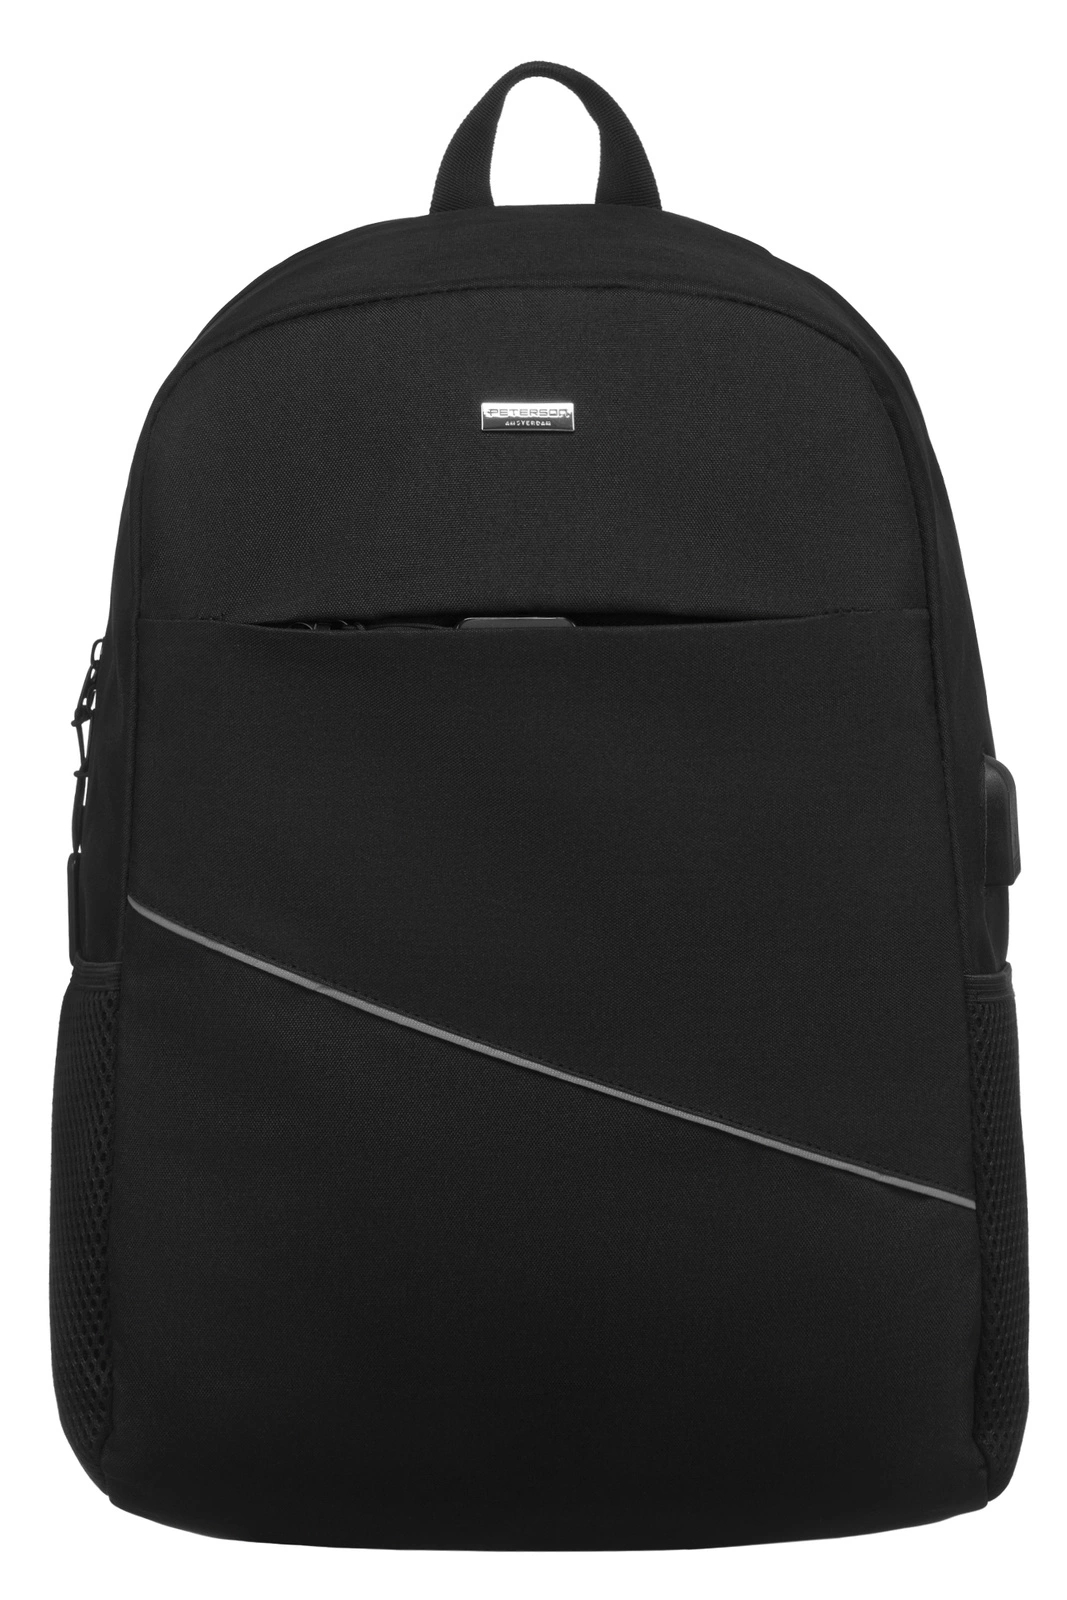 Peterson Cestovní batoh Gorebuckle černá One size